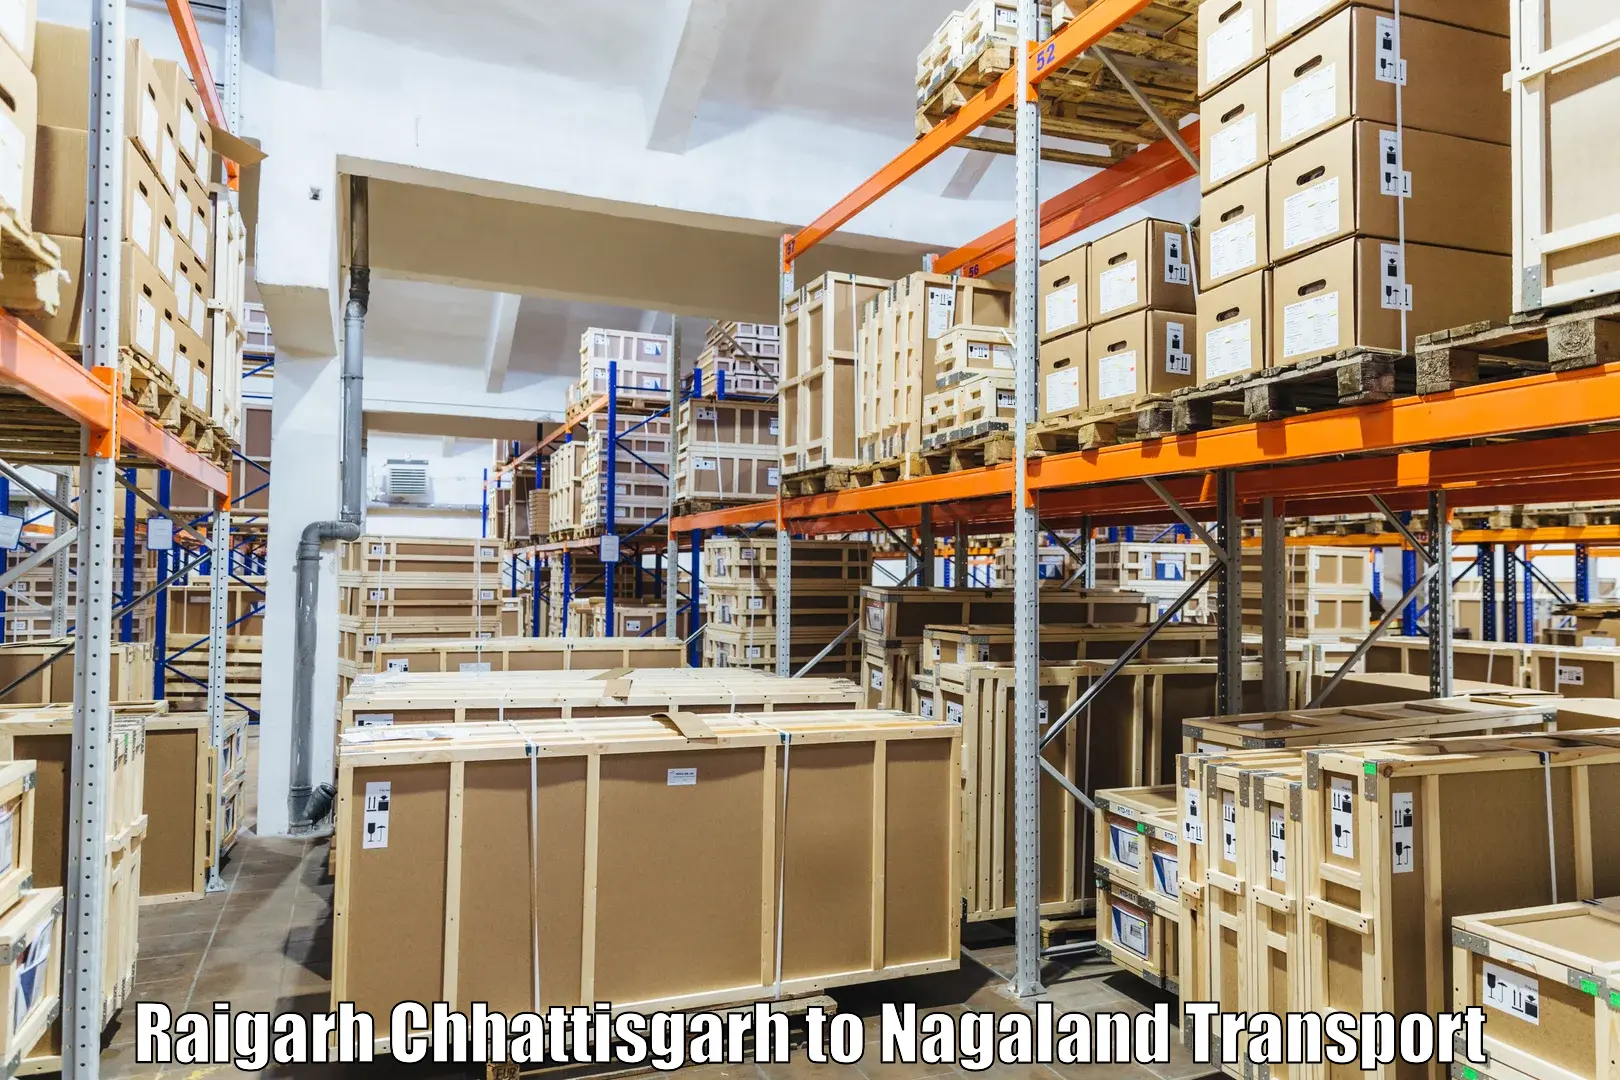 Cargo train transport services Raigarh Chhattisgarh to Mon